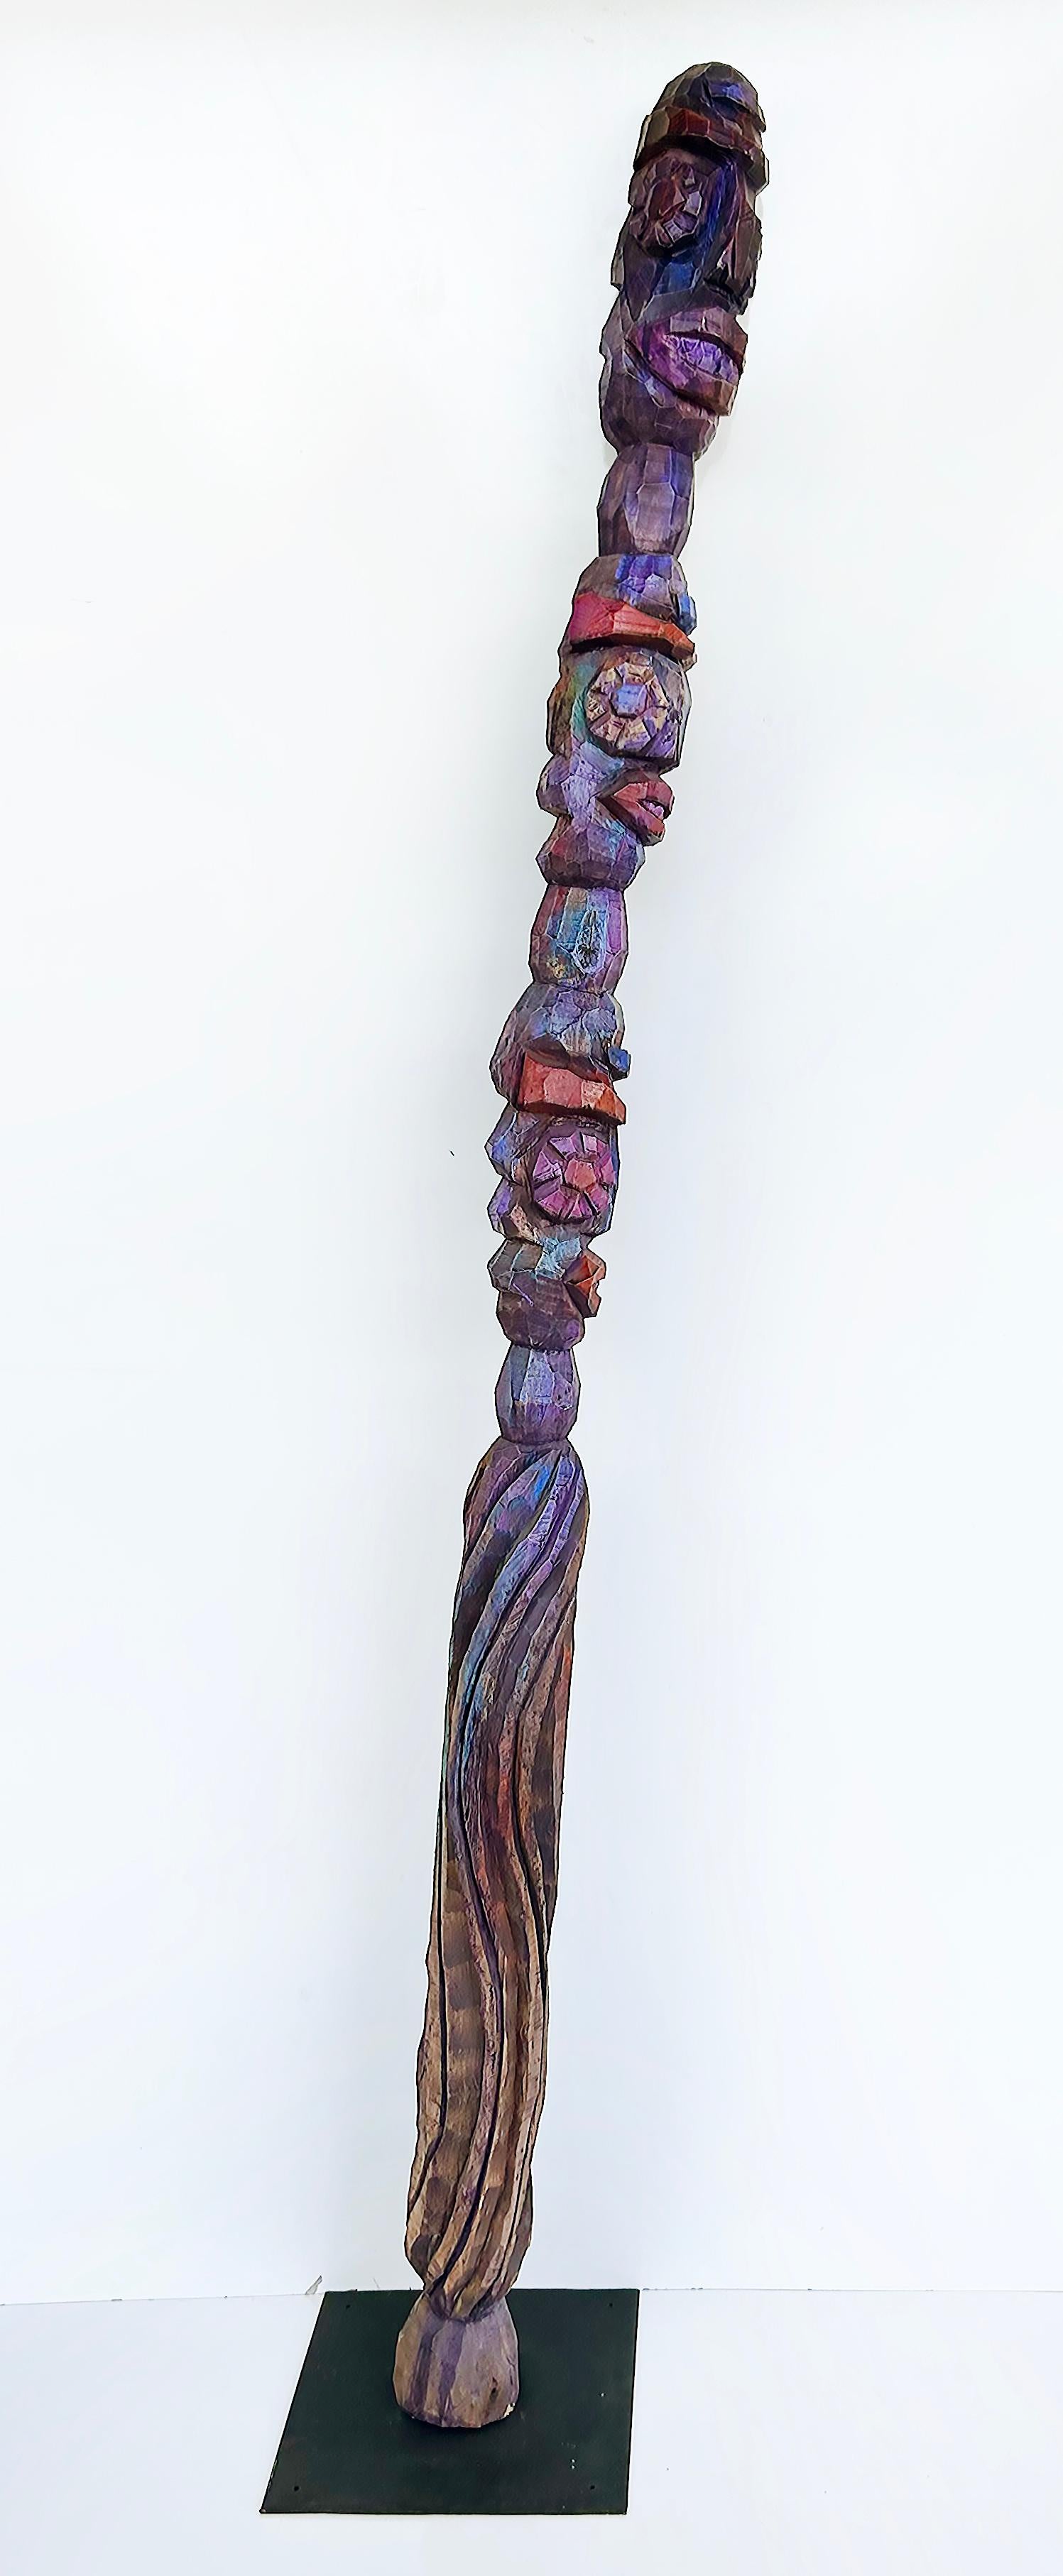 Tom Cramer Primitive American Folk Art Carved Figural Totem Sculpture 1994

Il s'agit d'une acquisition récente provenant d'une succession new-yorkaise. Voici une magnifique sculpture totem d'art populaire primitif de Tom Cramer (Américain, né en